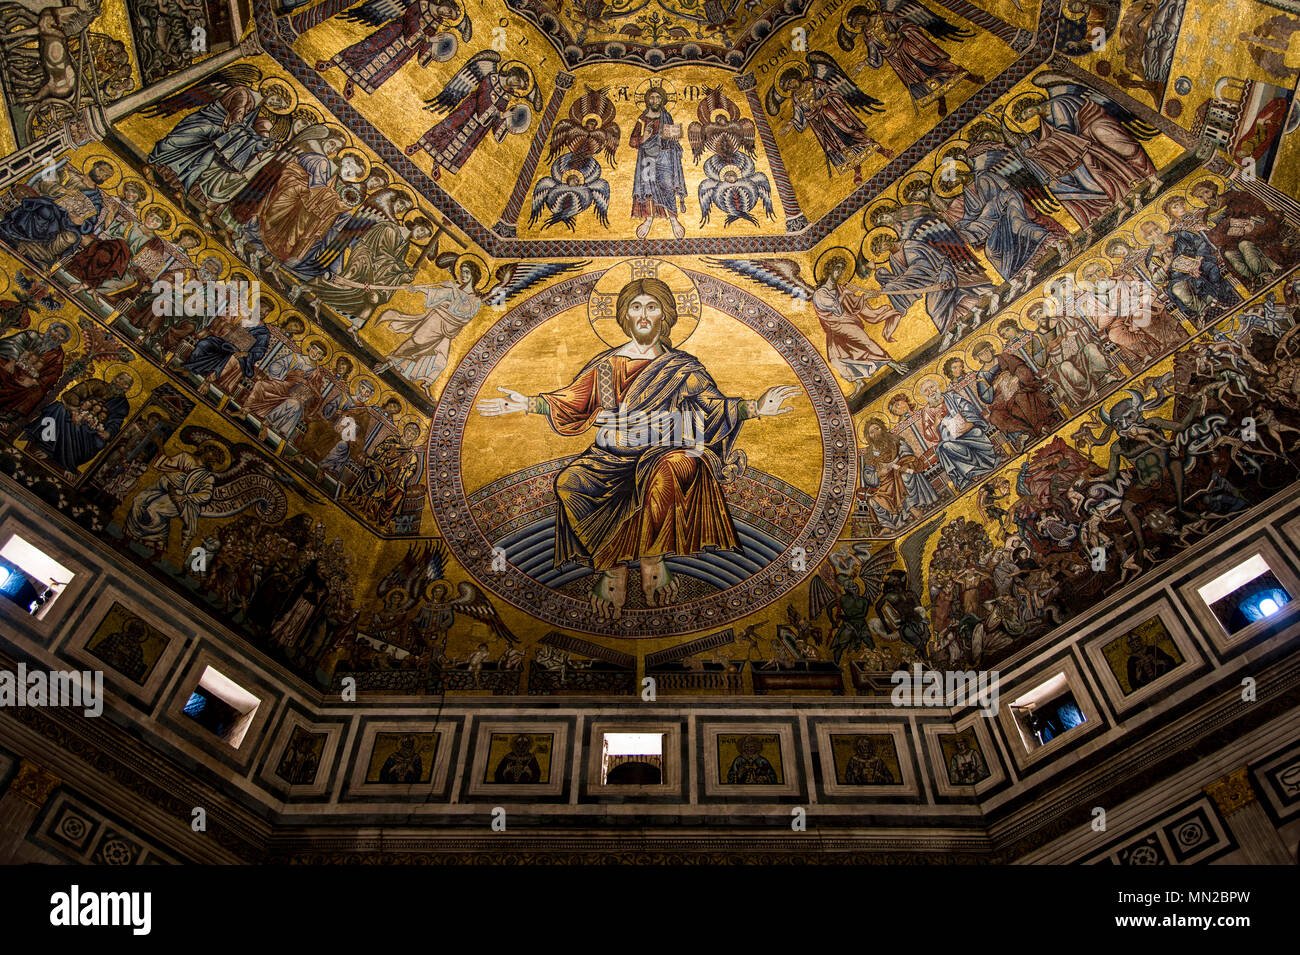 Cristo in trono, da Coppo di Marcovaldo, xiii secolo mosaici, soffitto a cupola, Battistero, Firenze, Sito Patrimonio Mondiale dell'UNESCO. Toscana, Italia, Euro Foto Stock